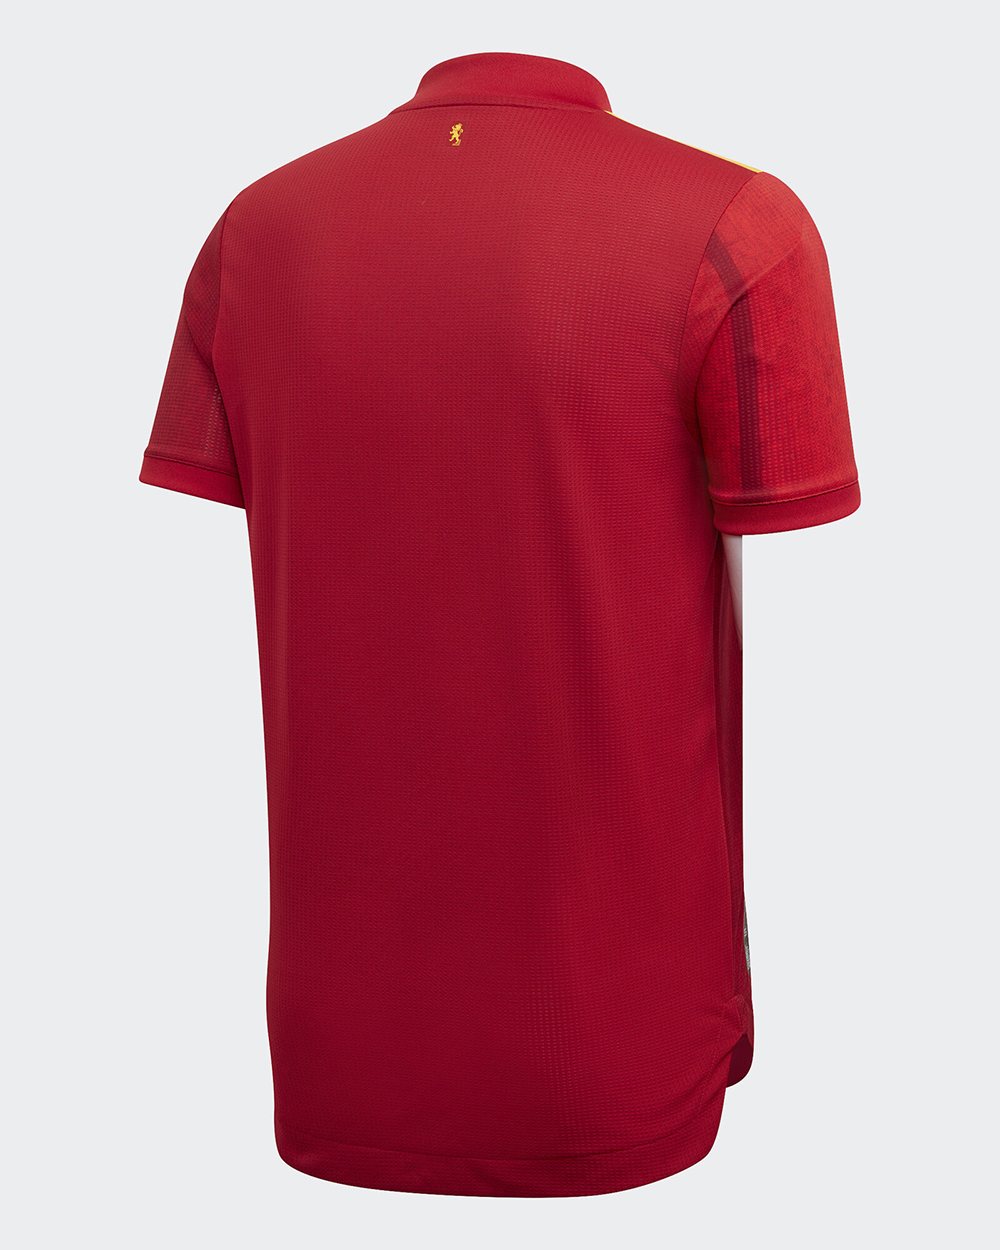 Camiseta adidas de España EURO 2020